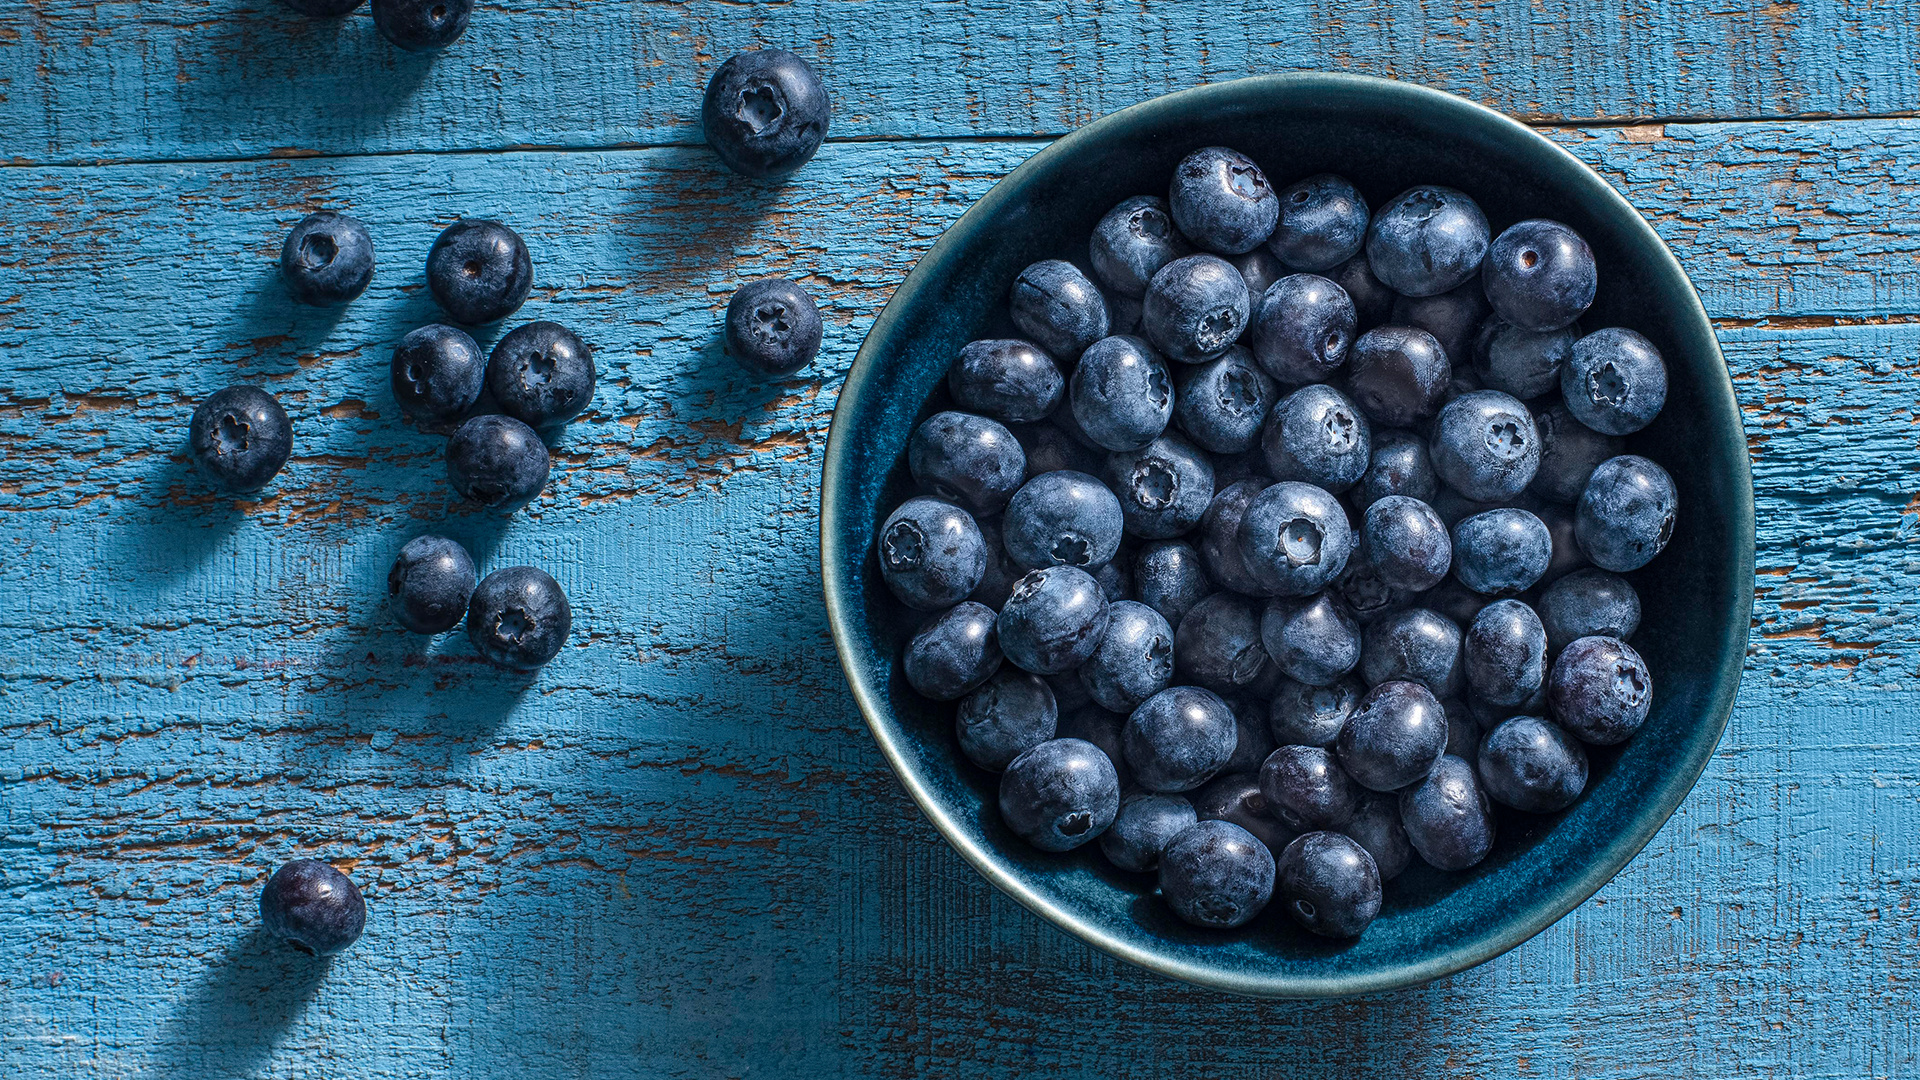 Sweet blueberries, Nutrient-rich fruit, Seasonal delight, Healthy snack, 1920x1080 Full HD Desktop